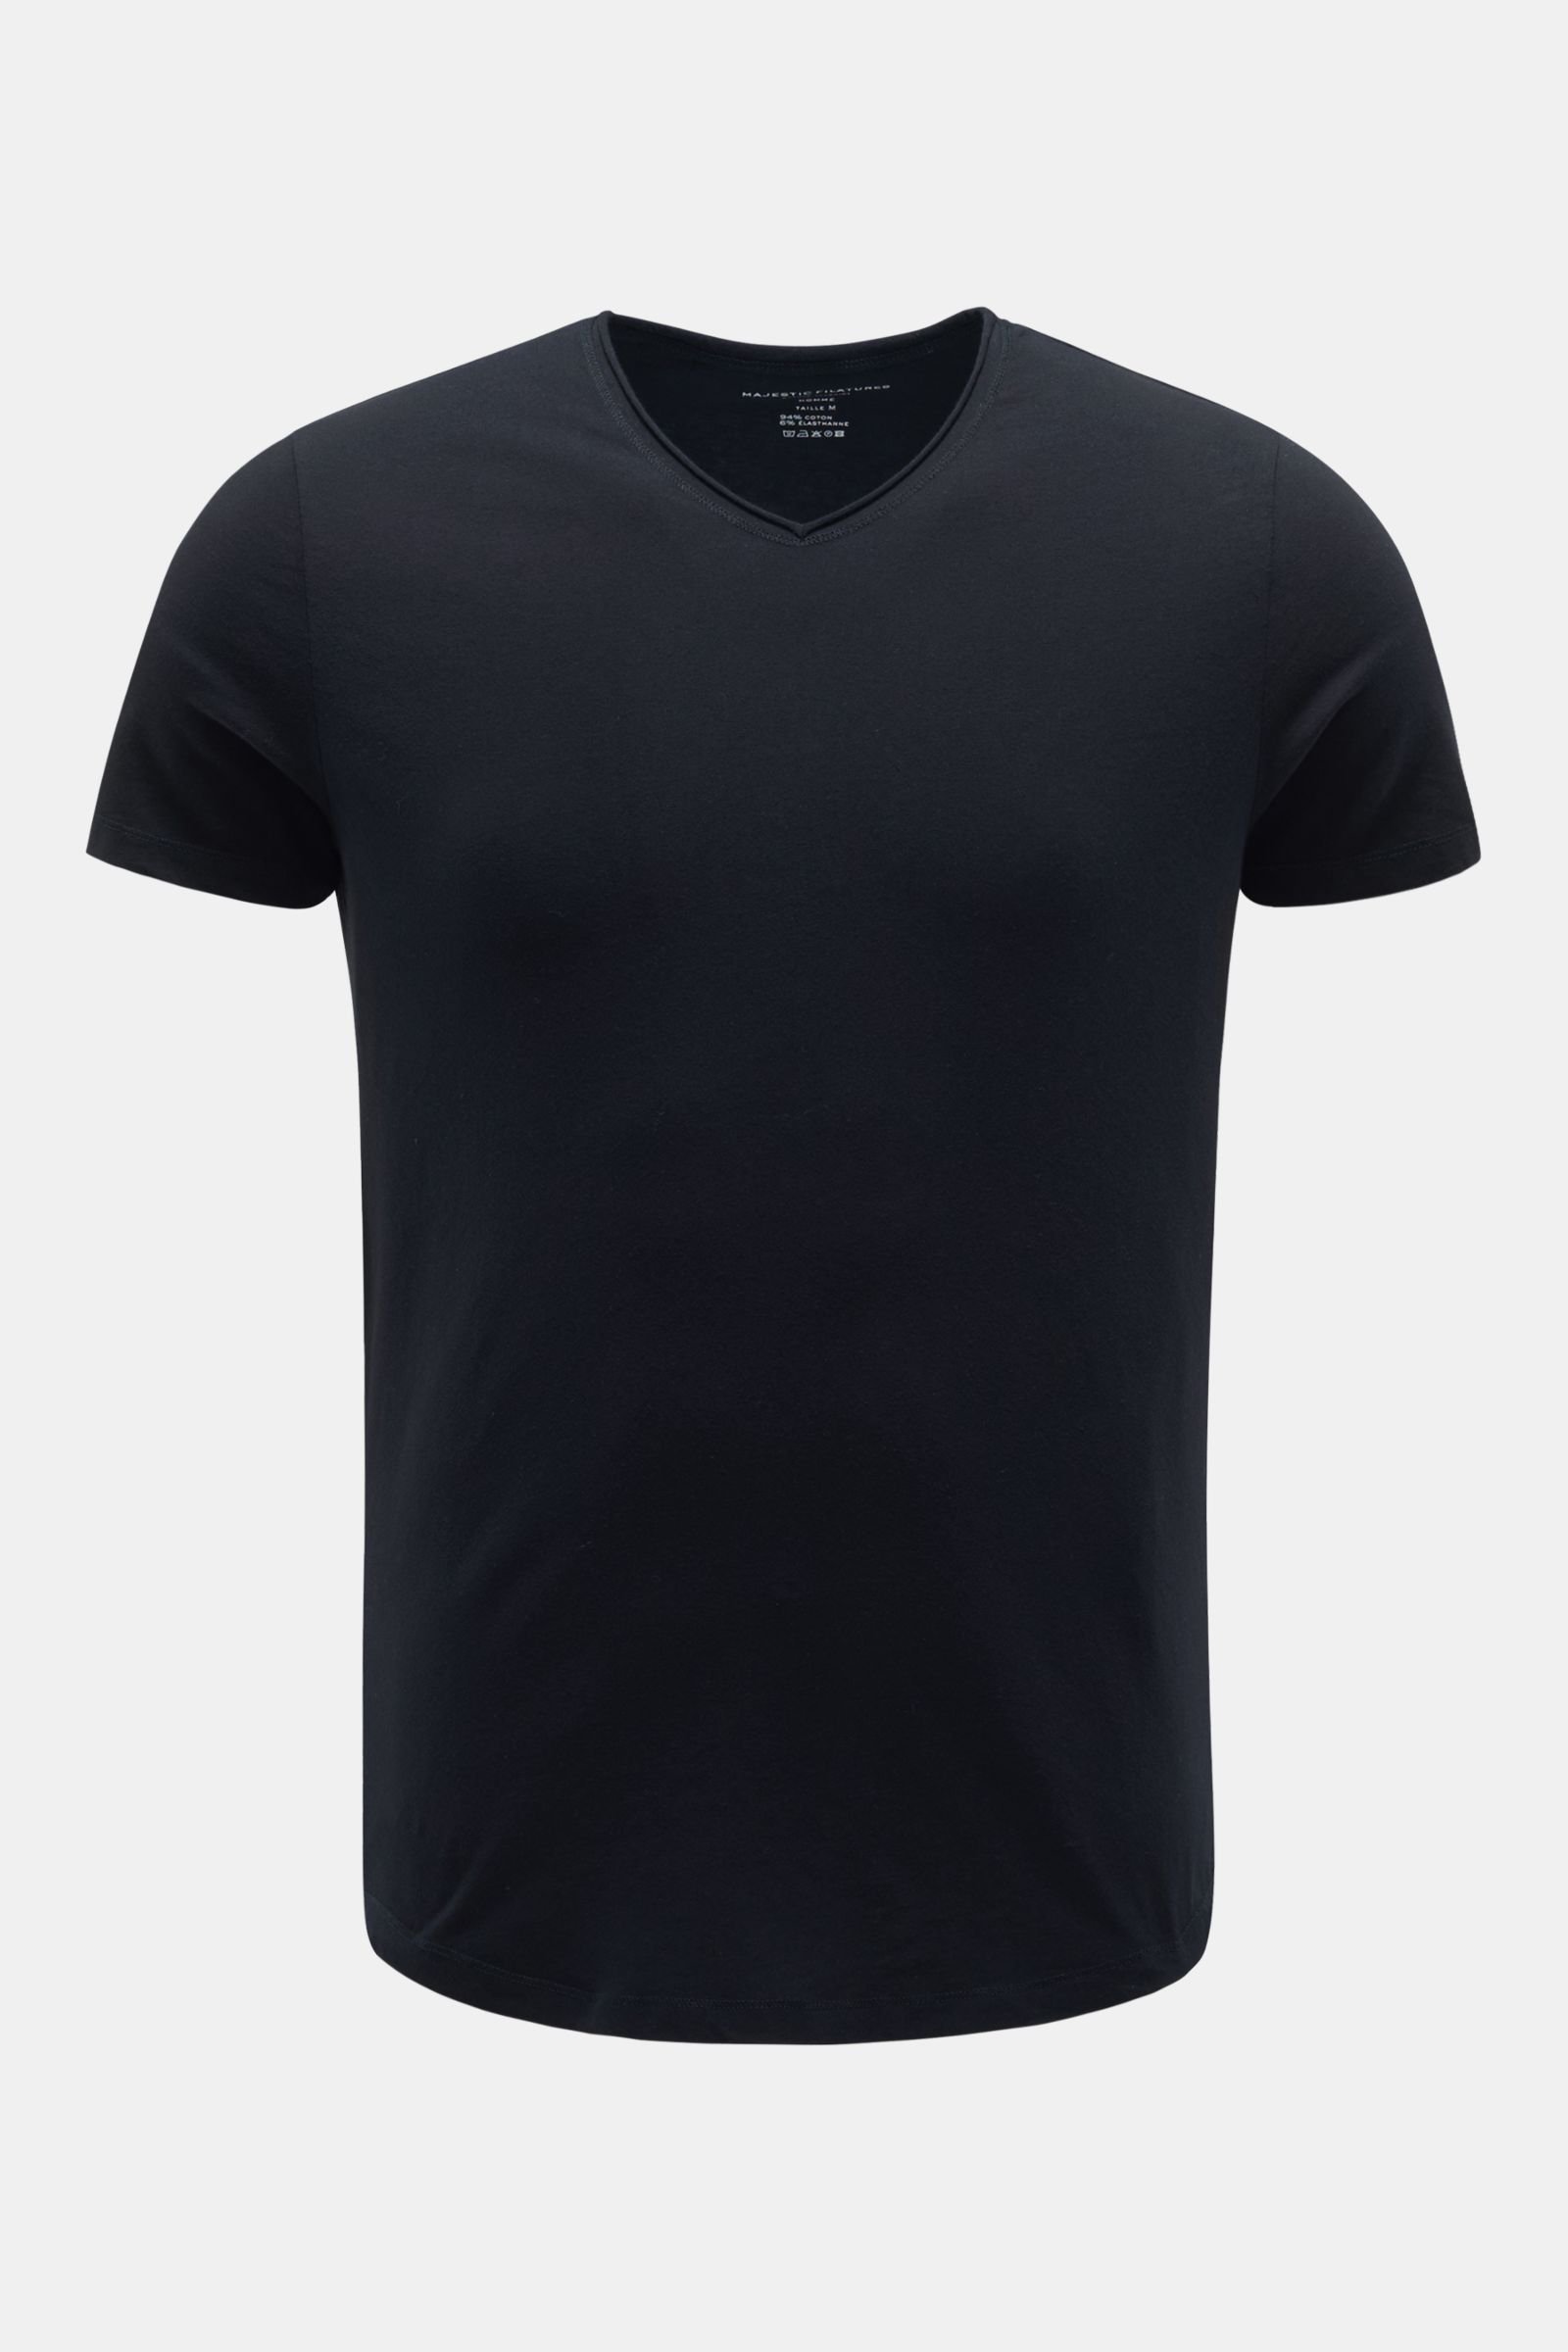 V-neck T-shirt navy